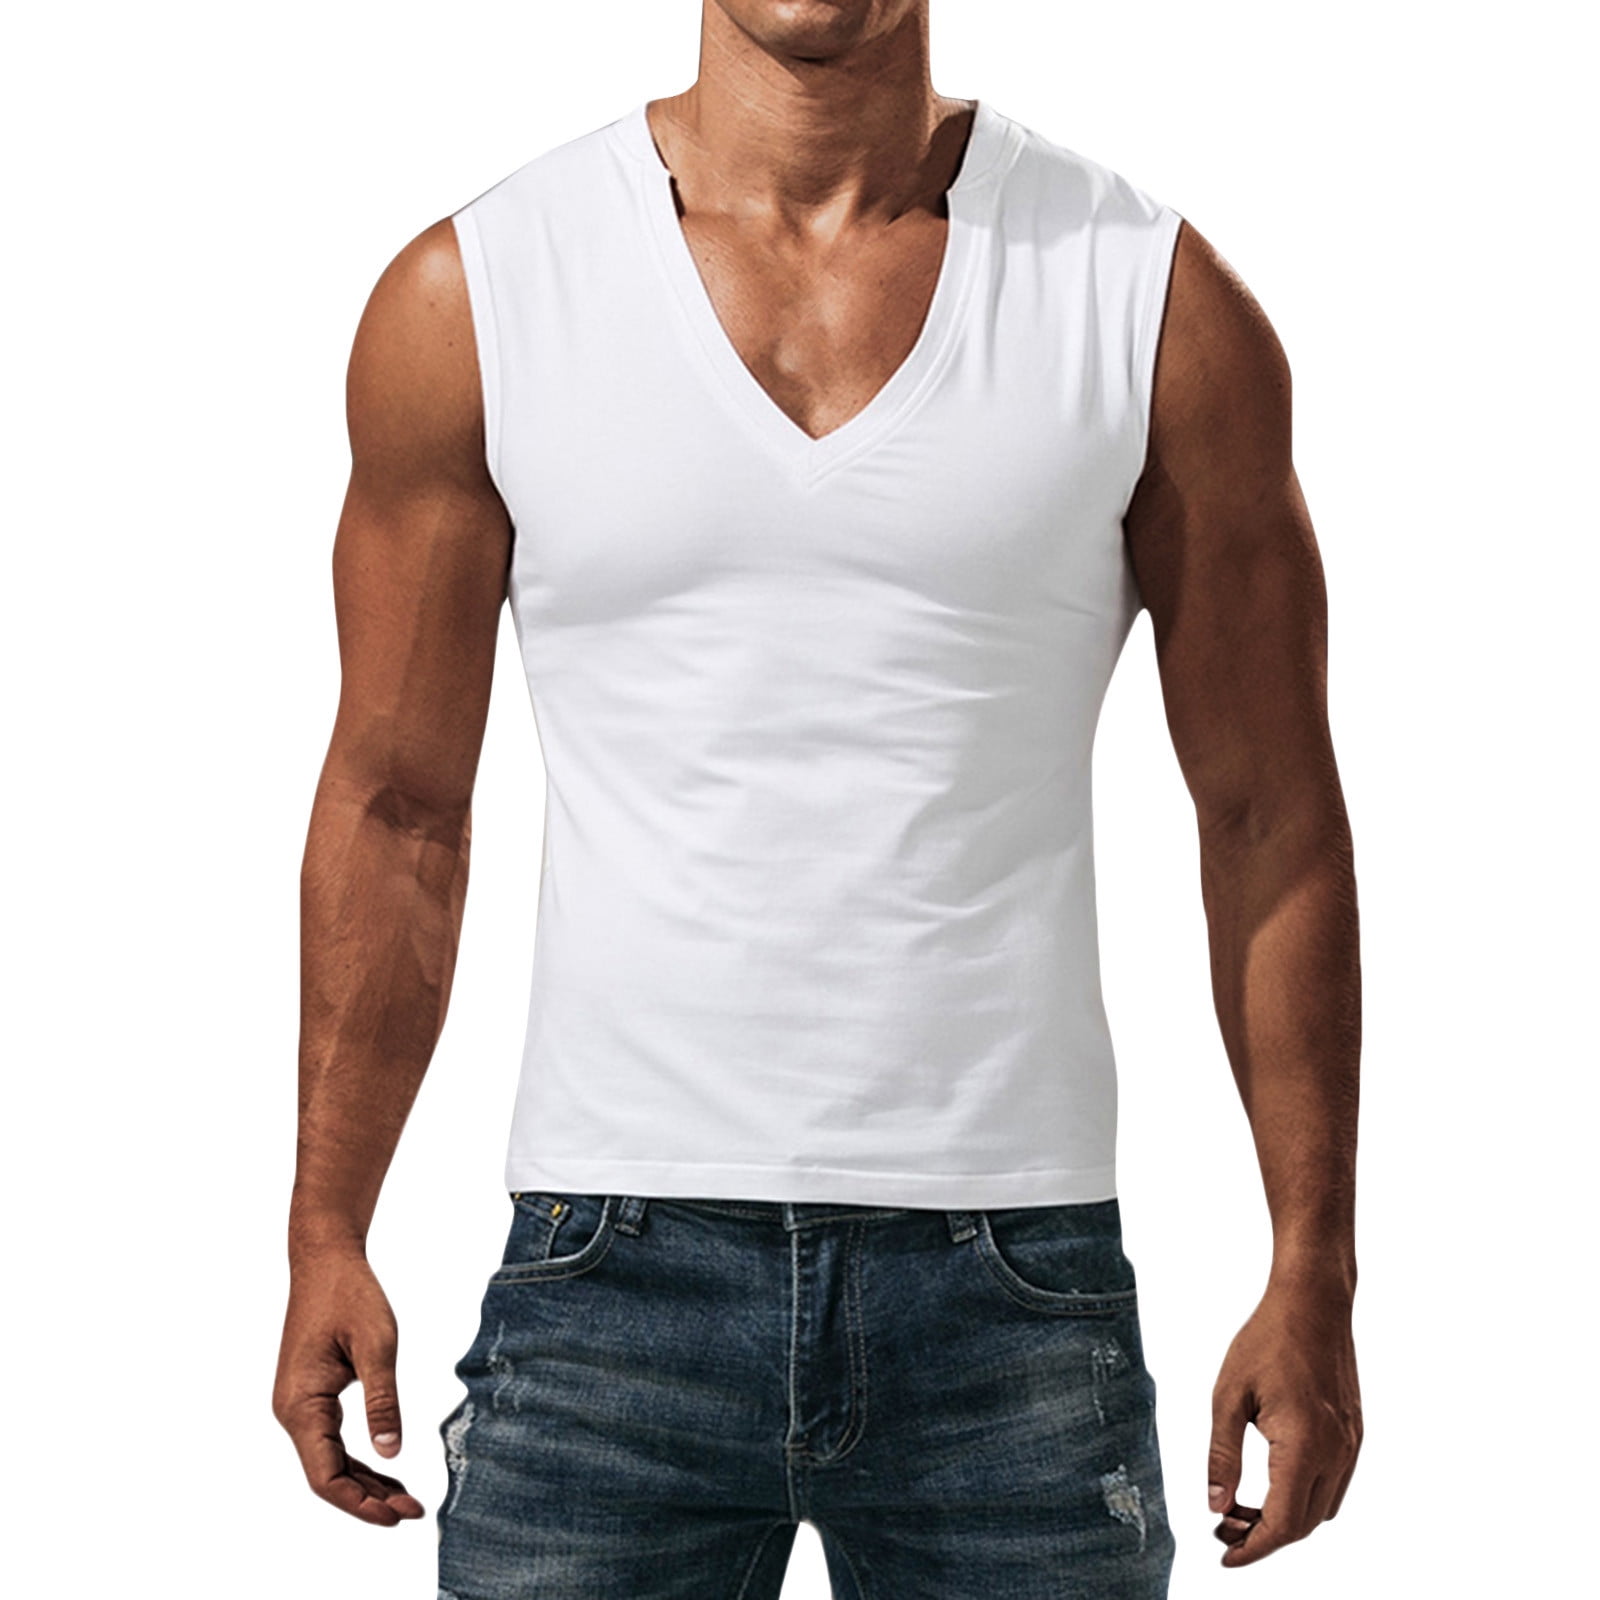 Hfyihgf Mens Compression Shirt Sleeveless V-Neck Slimming Body